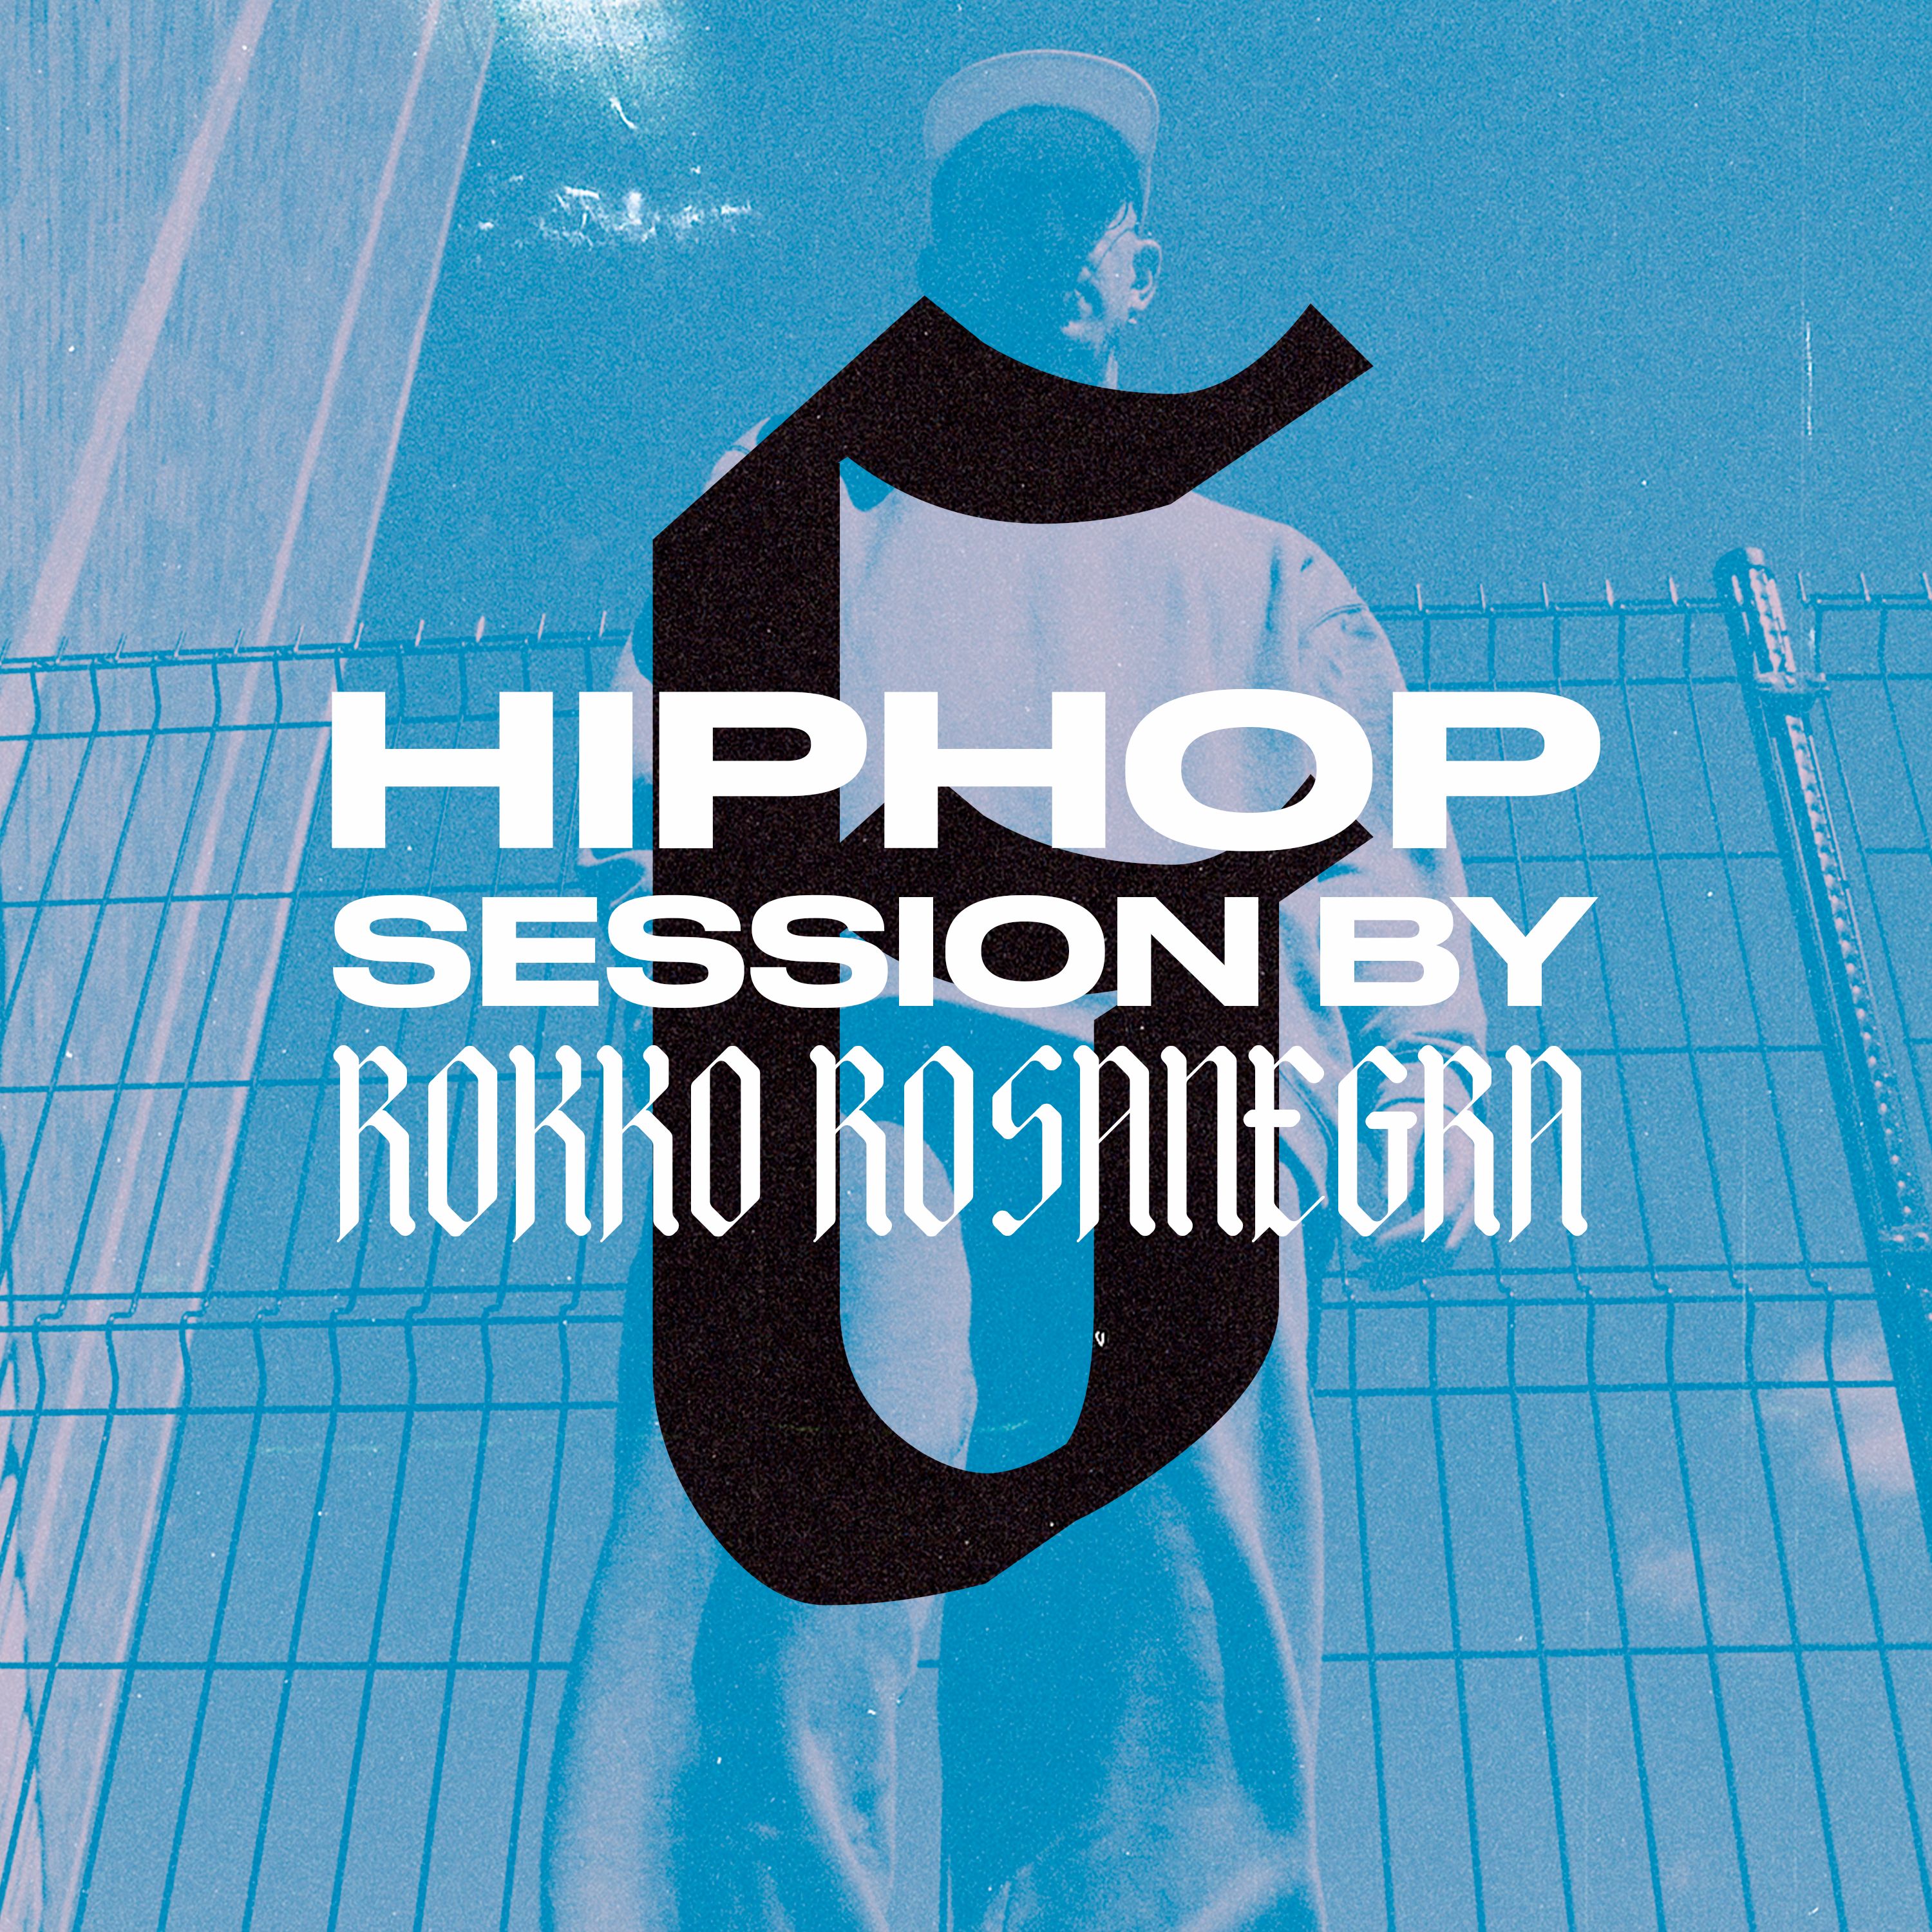 Ներբեռնե HIP HOP SESSION 6 (DJ ROKKO ROSANEGRA)